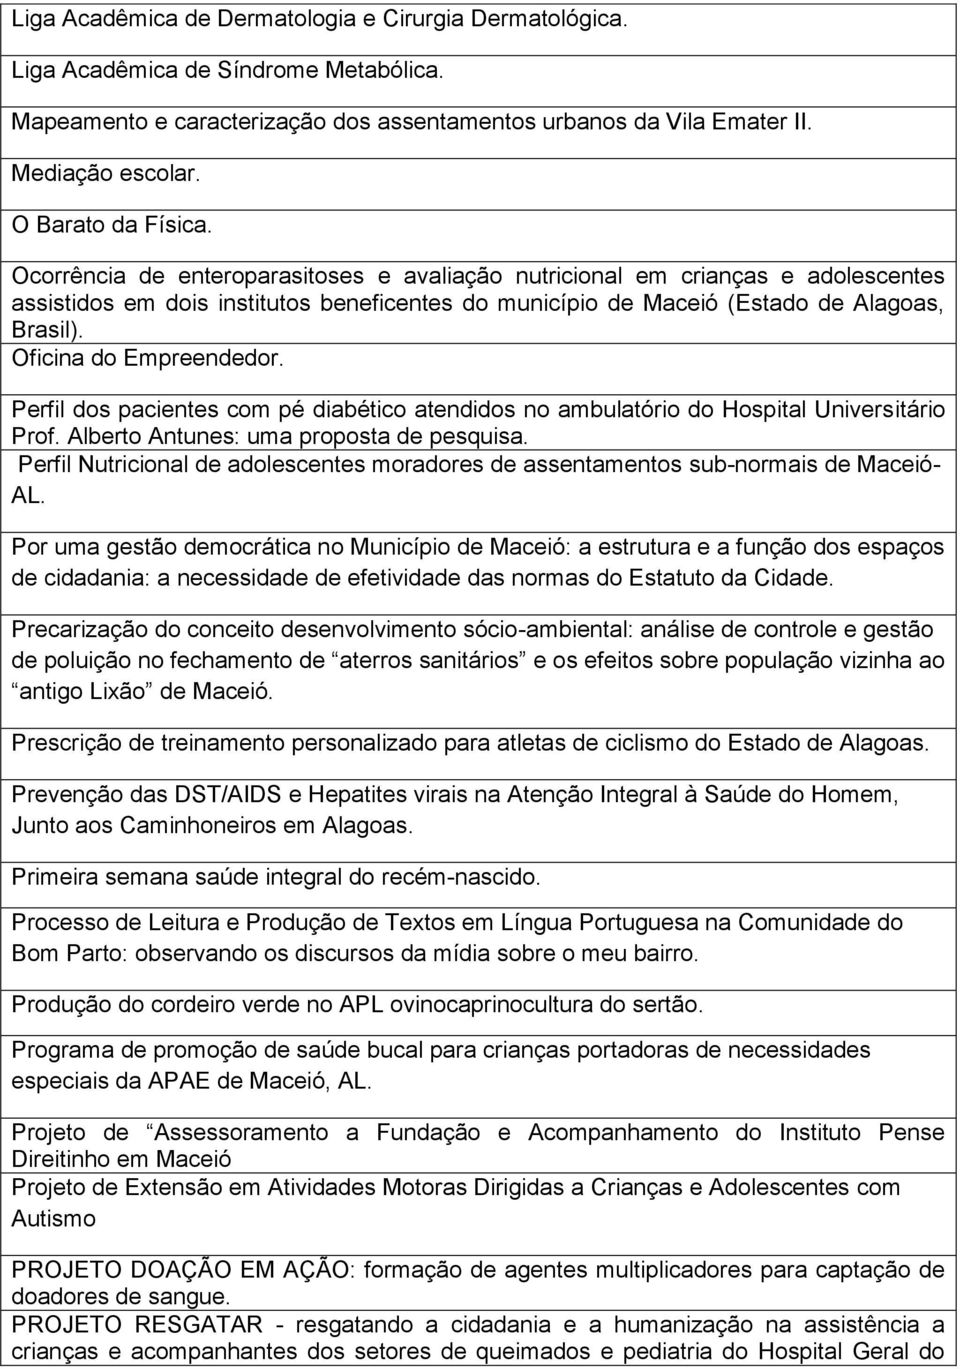 Oficina do Empreendedor. Perfil dos pacientes com pé diabético atendidos no ambulatório do Hospital Universitário Prof. Alberto Antunes: uma proposta de pesquisa.